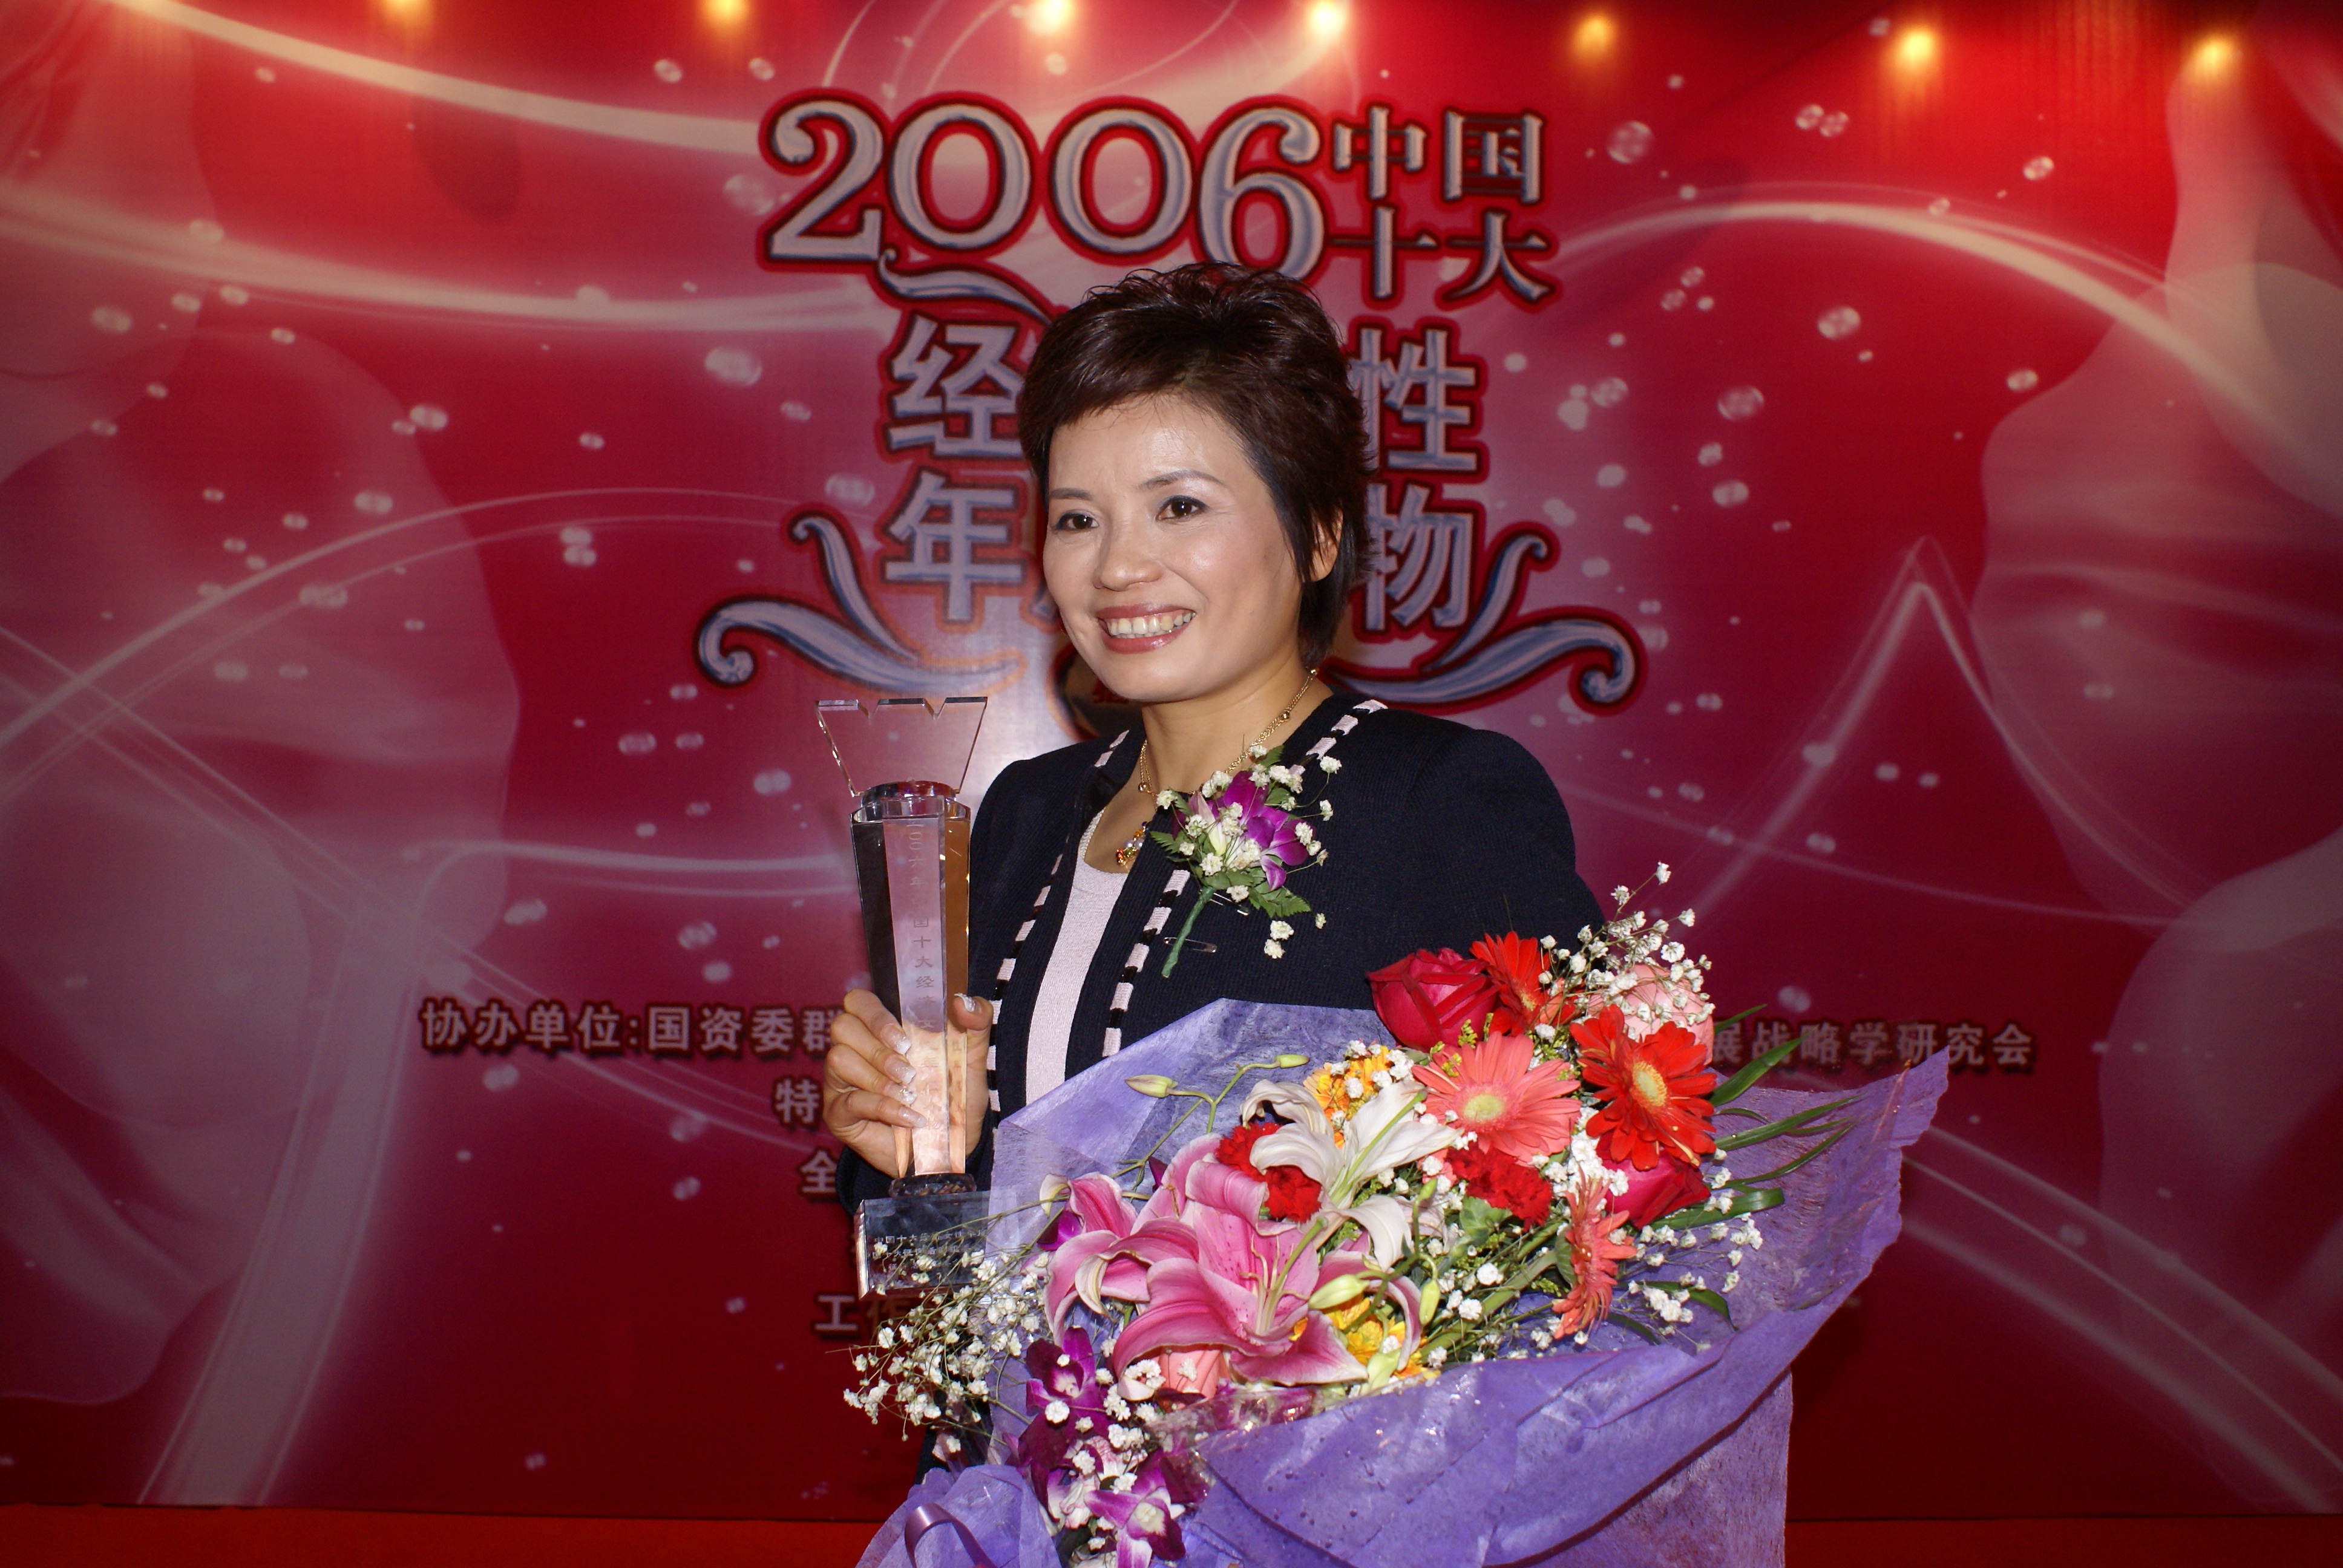 严旭获选2006中国十大经济女性年度人物